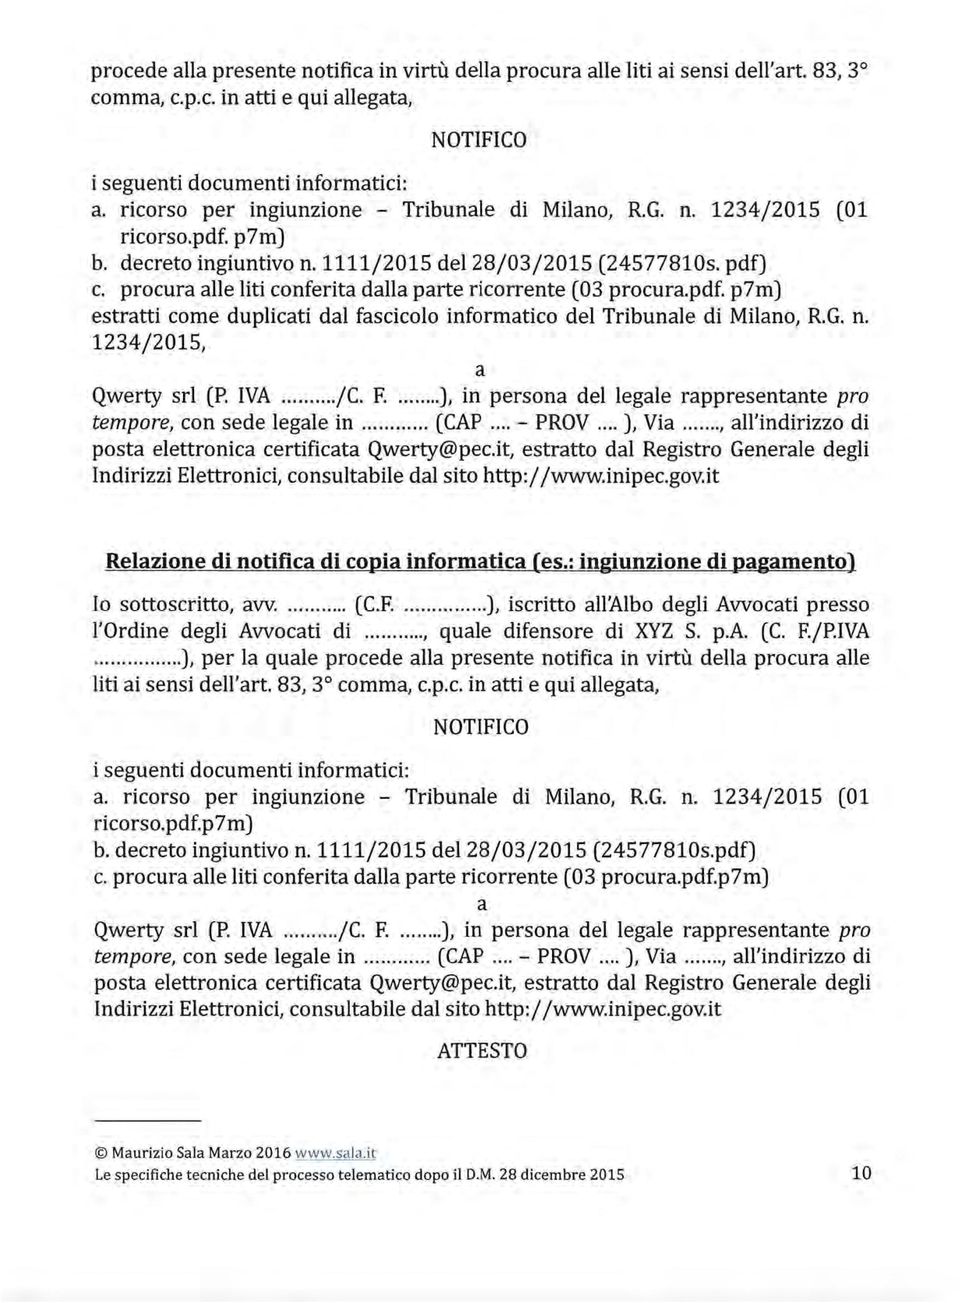 procura alle liti conferita dalla parte ricorrente (03 procura.pdf. p7m) estratti come duplicati dal fascicolo informatico del Tribunale di Milano, R.G. n. 1234/2015, a Qwerty srl (P. IVA... /C. F.